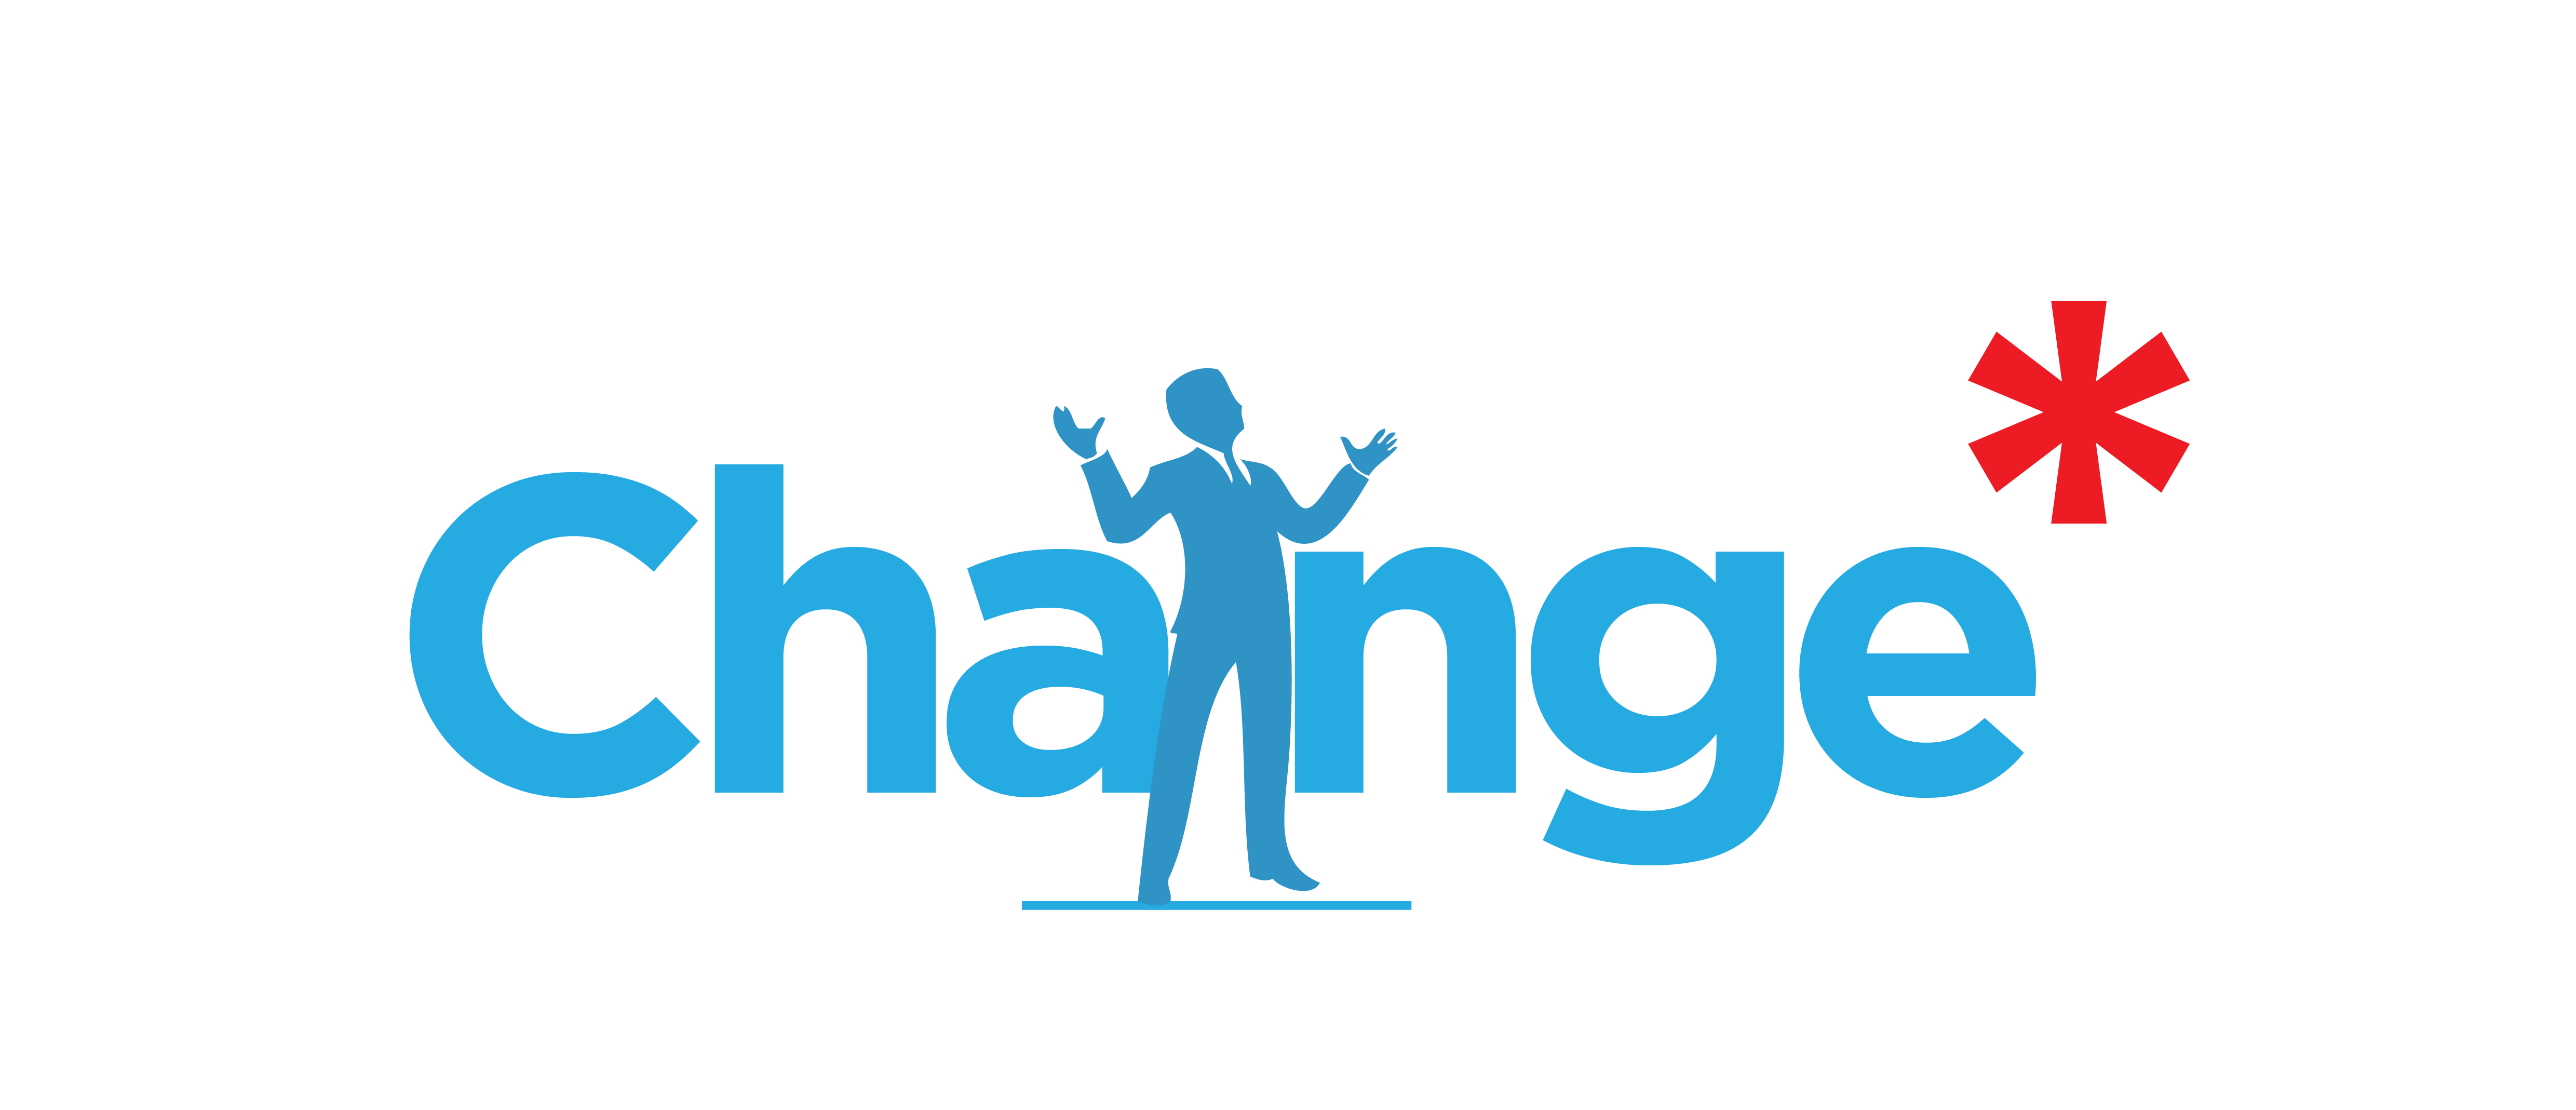 The Change Logo - Change Logos